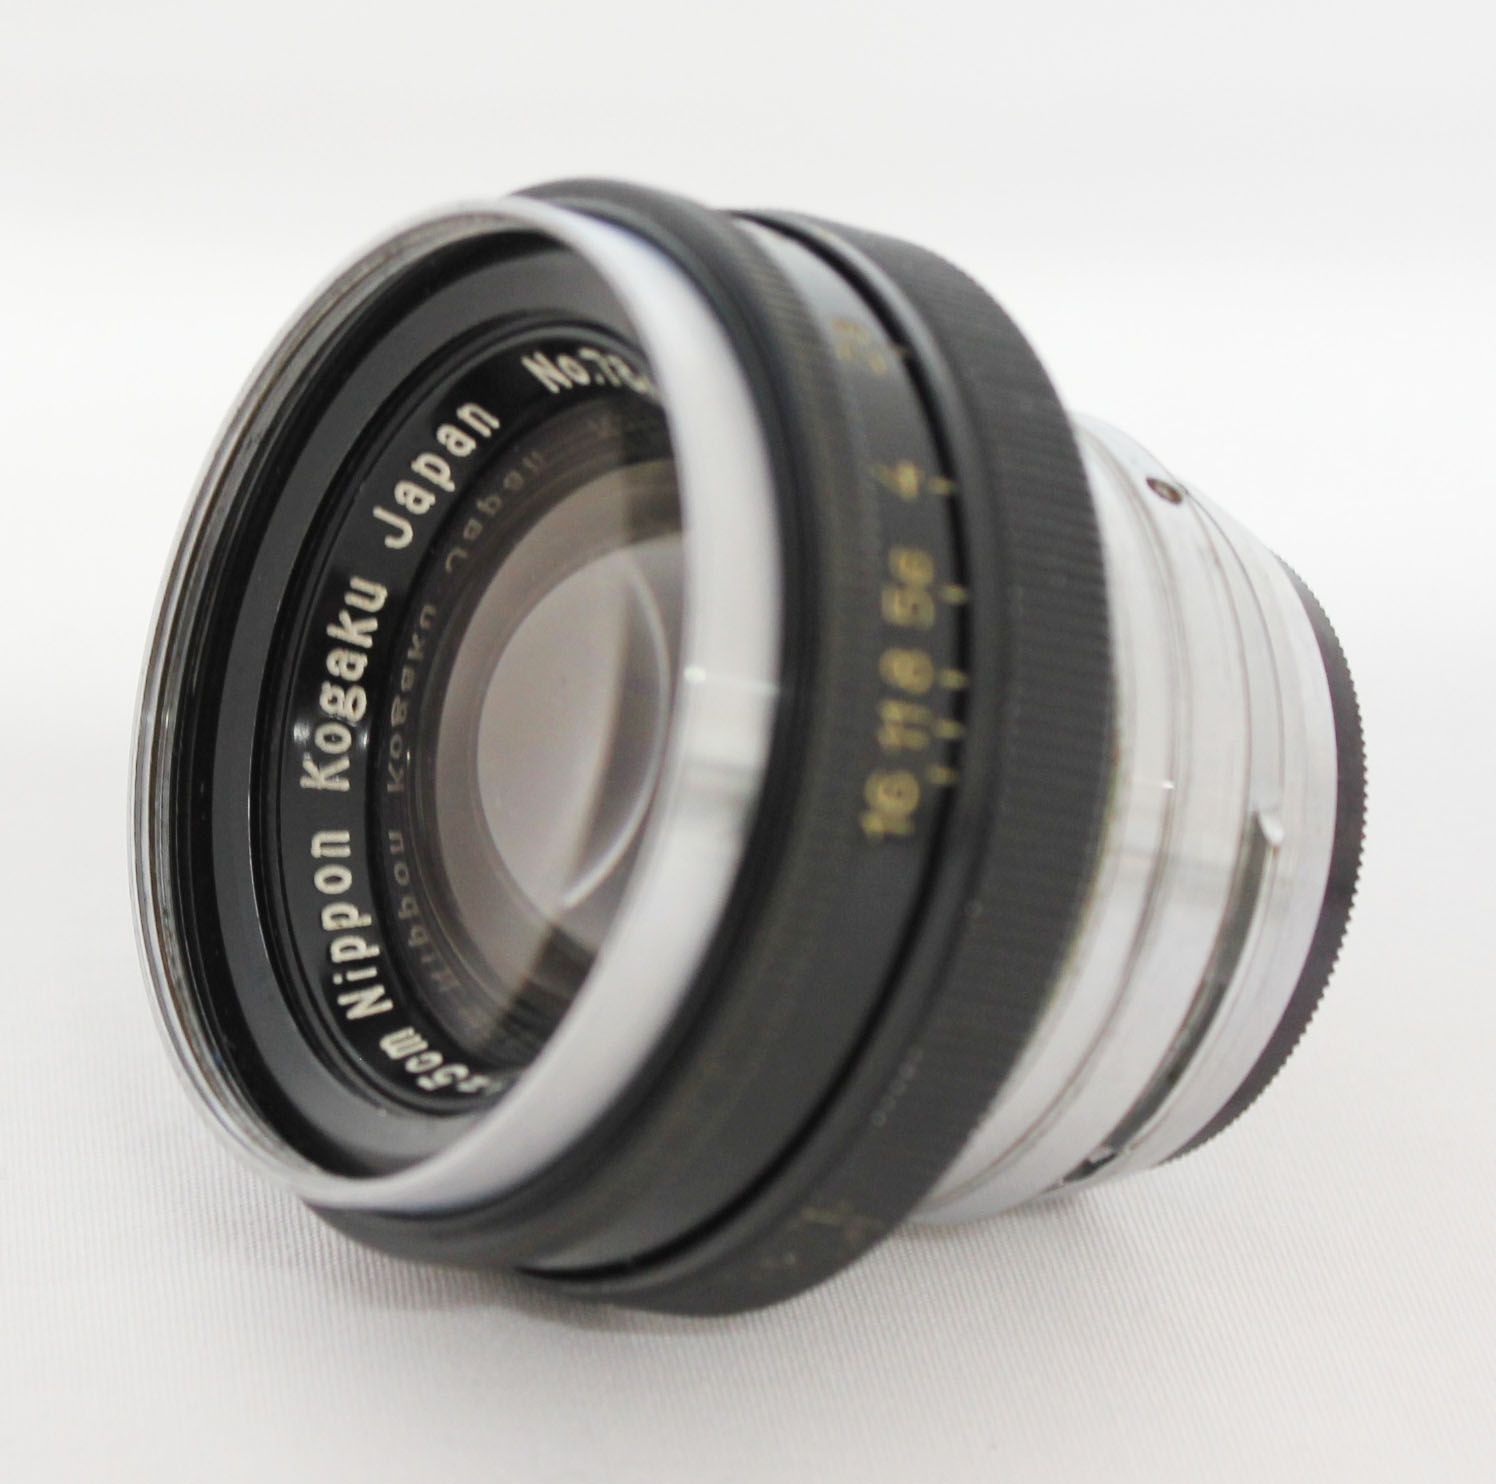  Nippon Kogaku Nikkor-H.C 5cm 50mm F/2 Lens for Nikon S Mount from Japan Photo 1